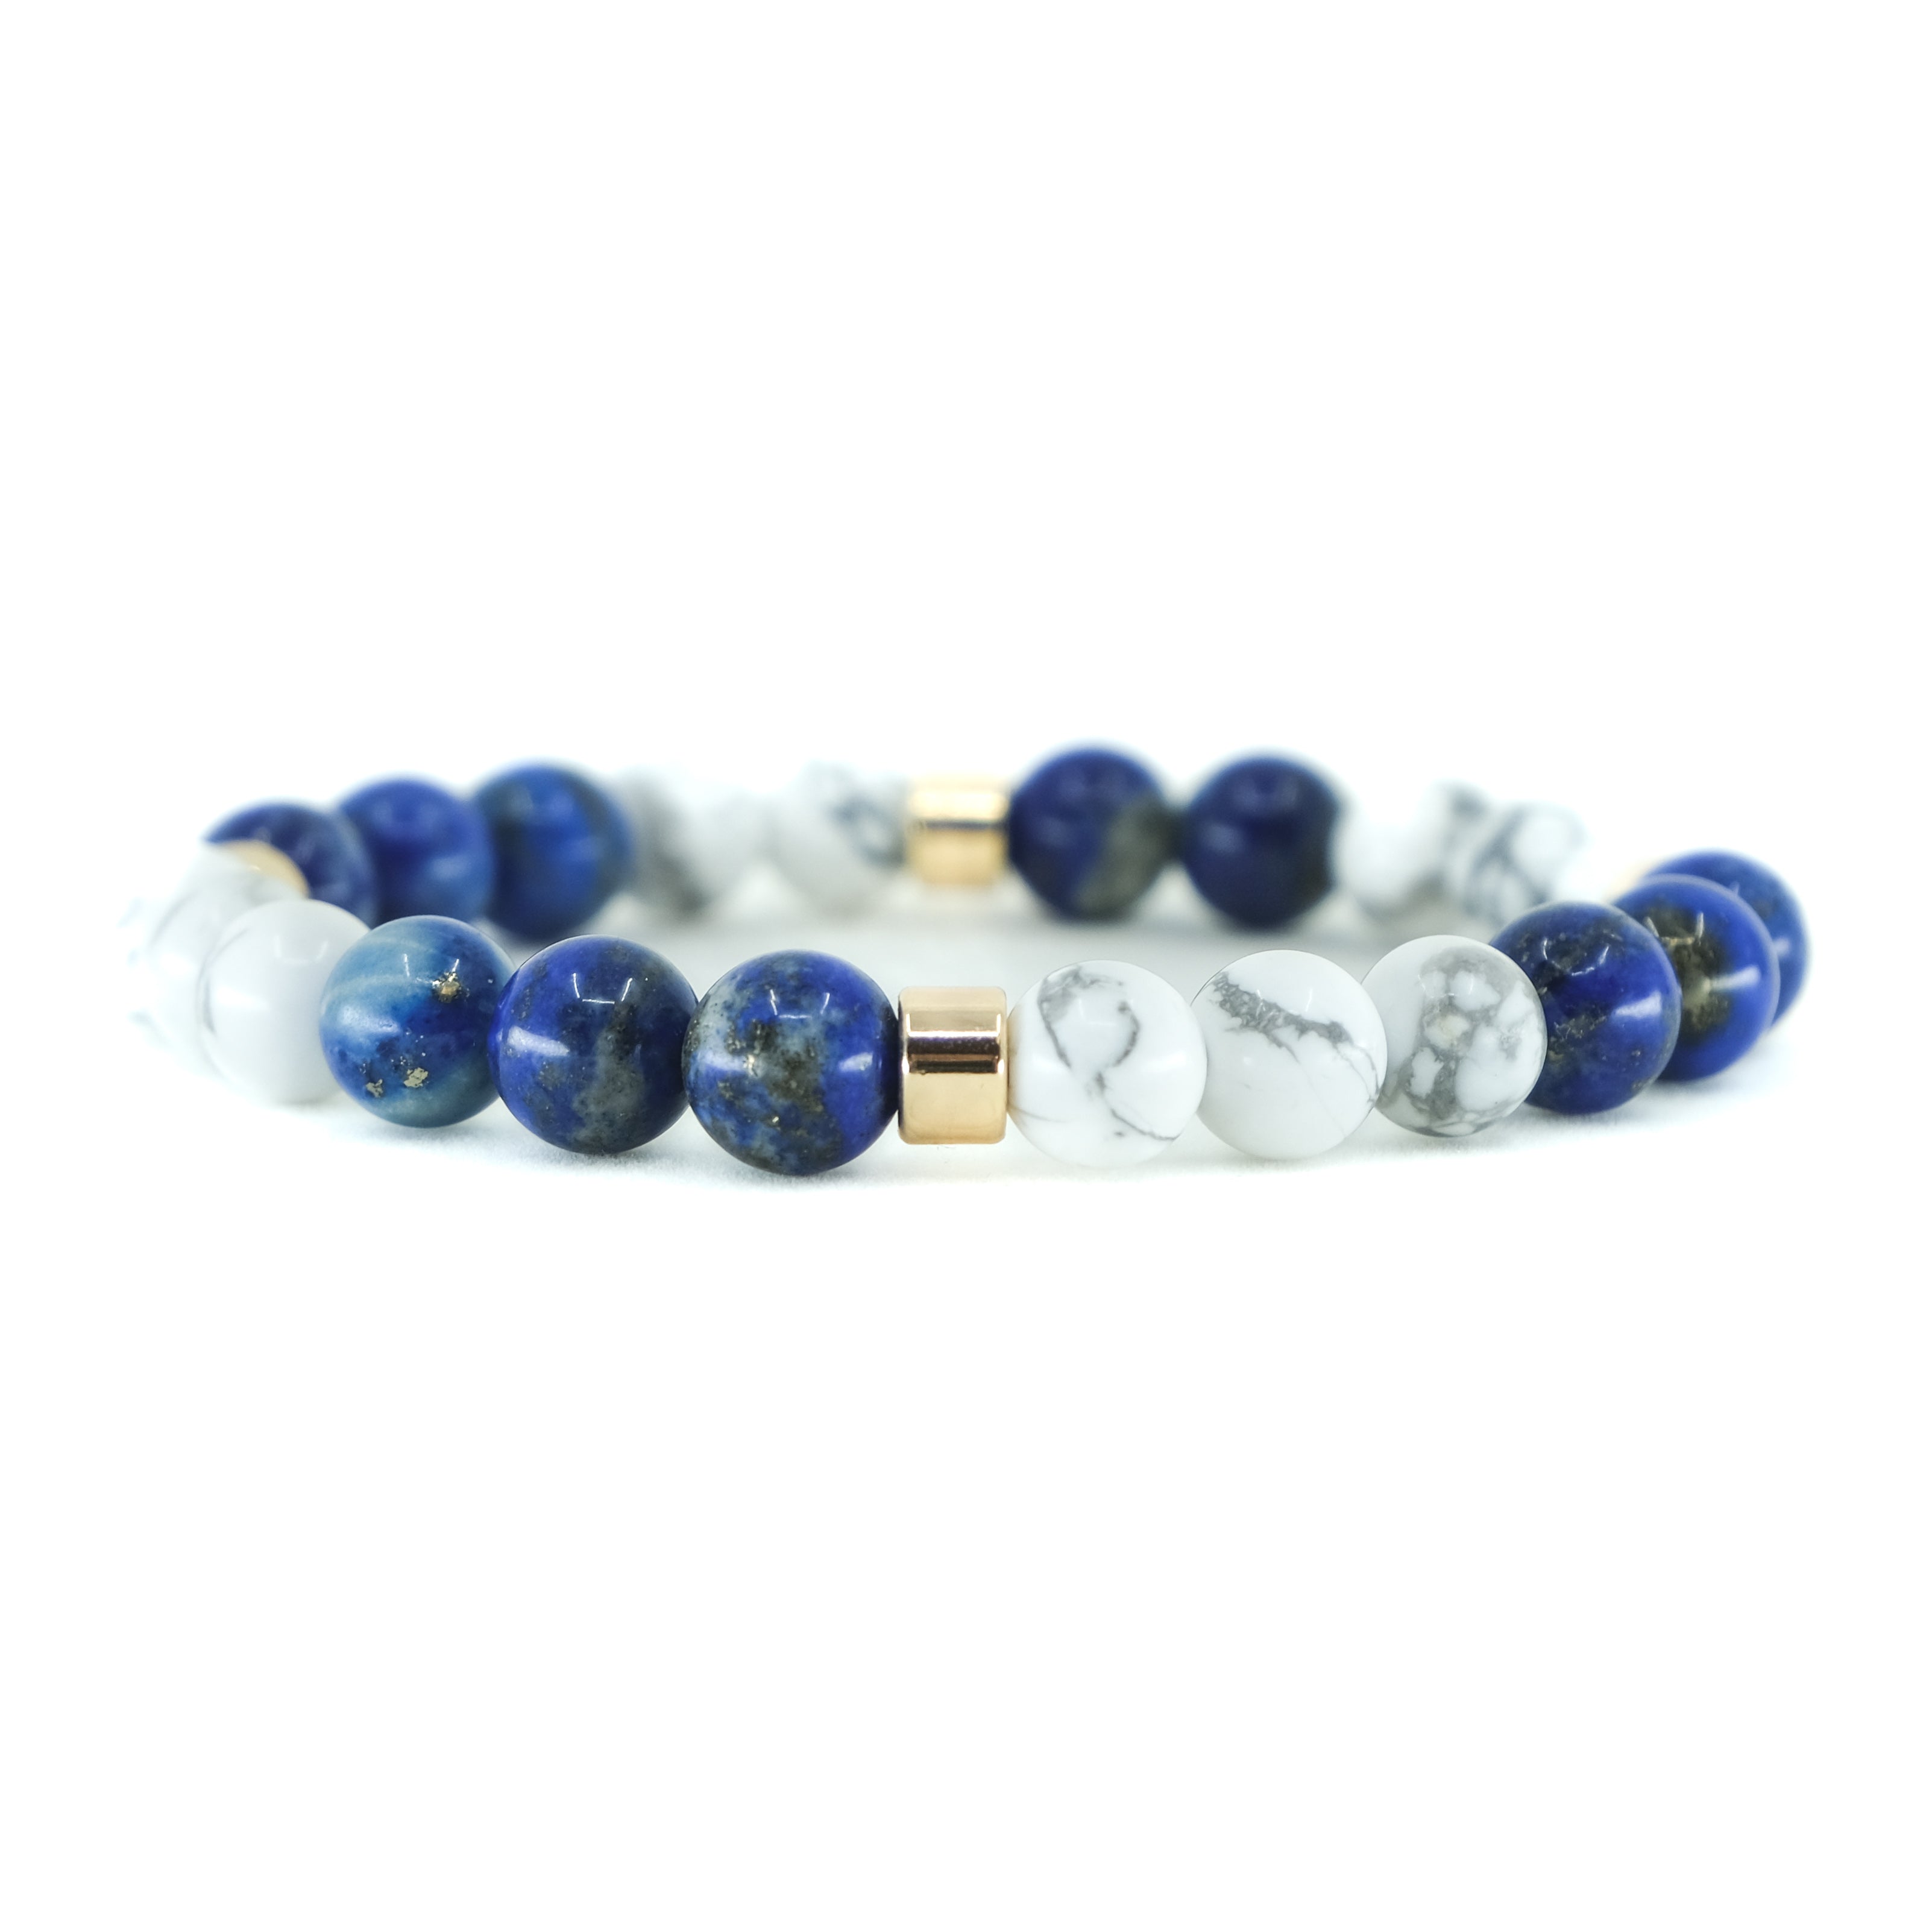 Lapis Lazuli and Howlite Energy Gemstone Bracelet